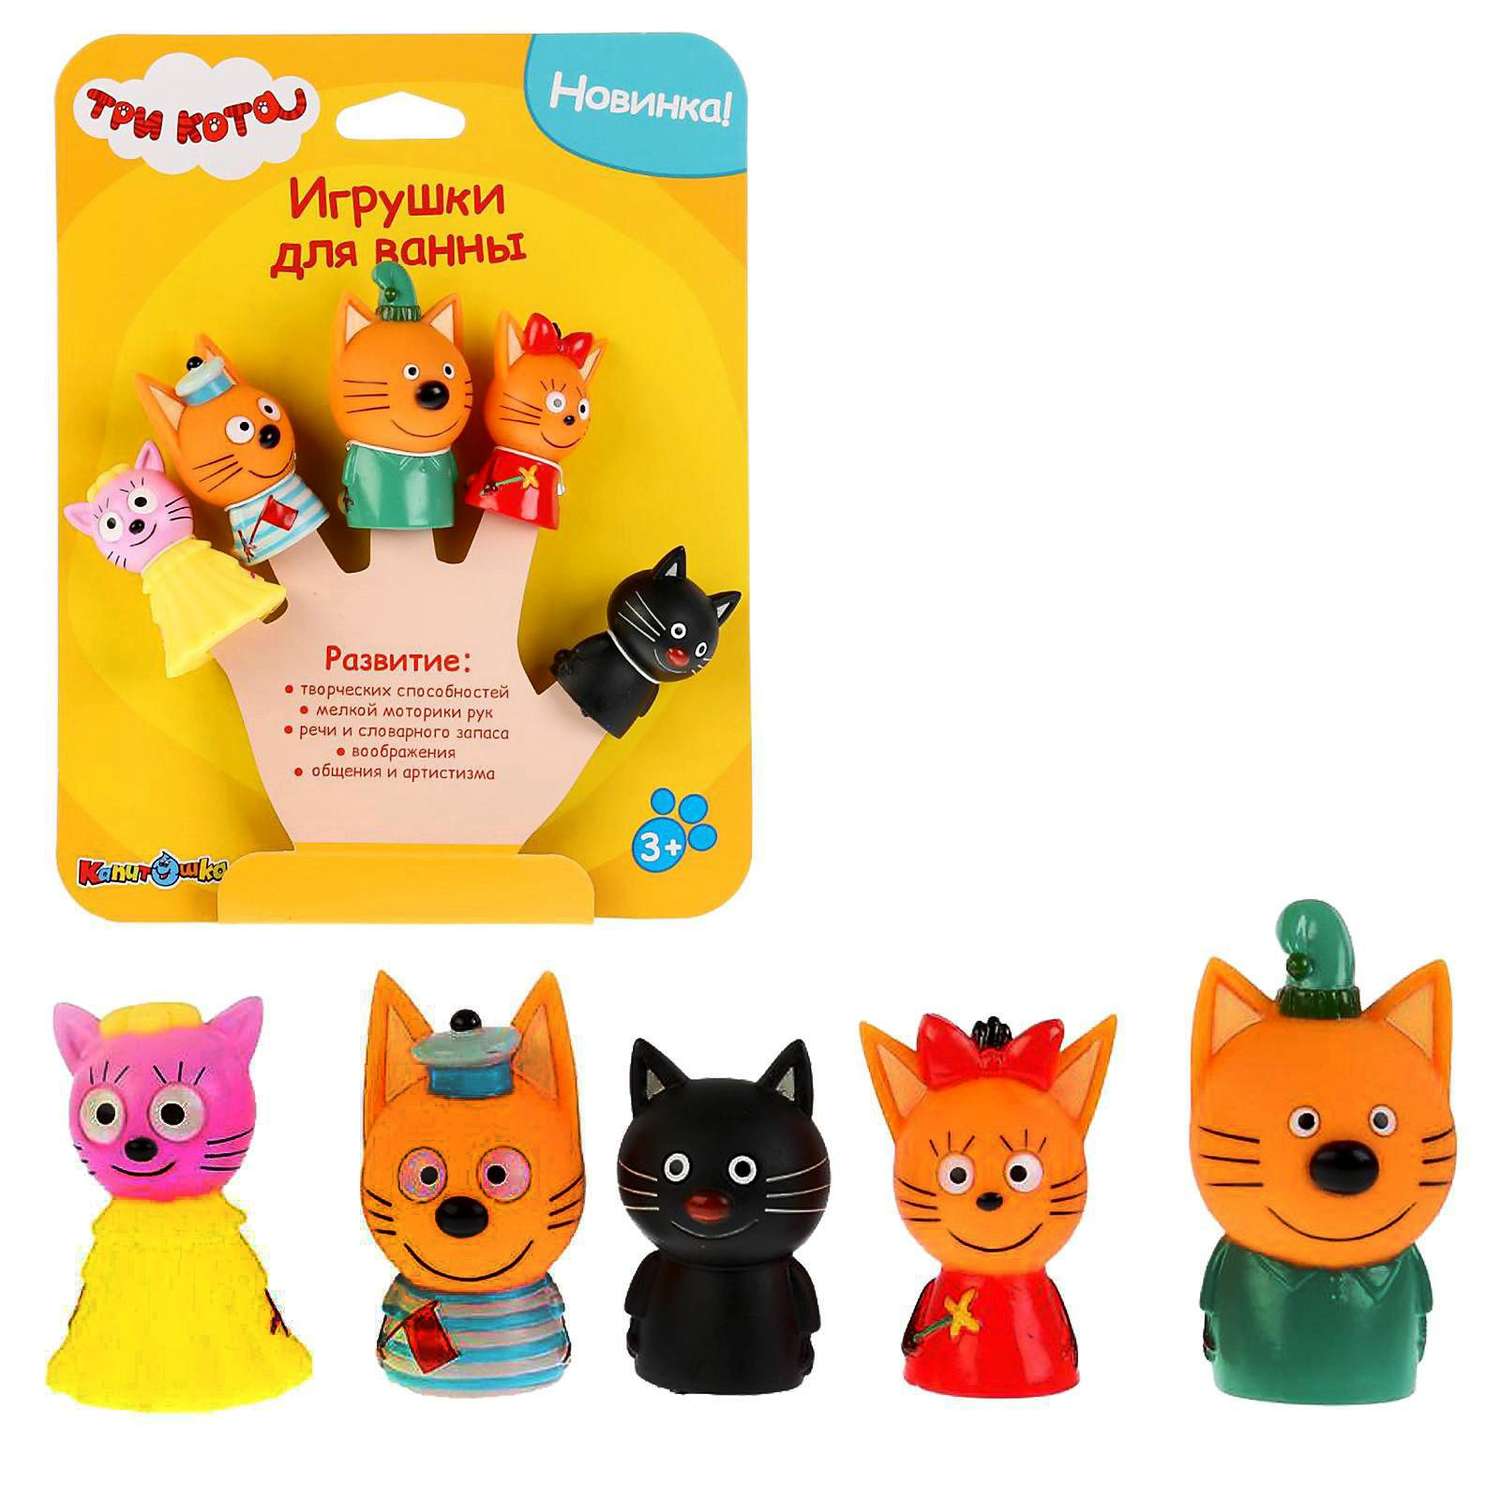 Набор Капитошка для купания «Три Кота: Пальчиковый театр» 5 фигурок на картоне в коробке - фото 1